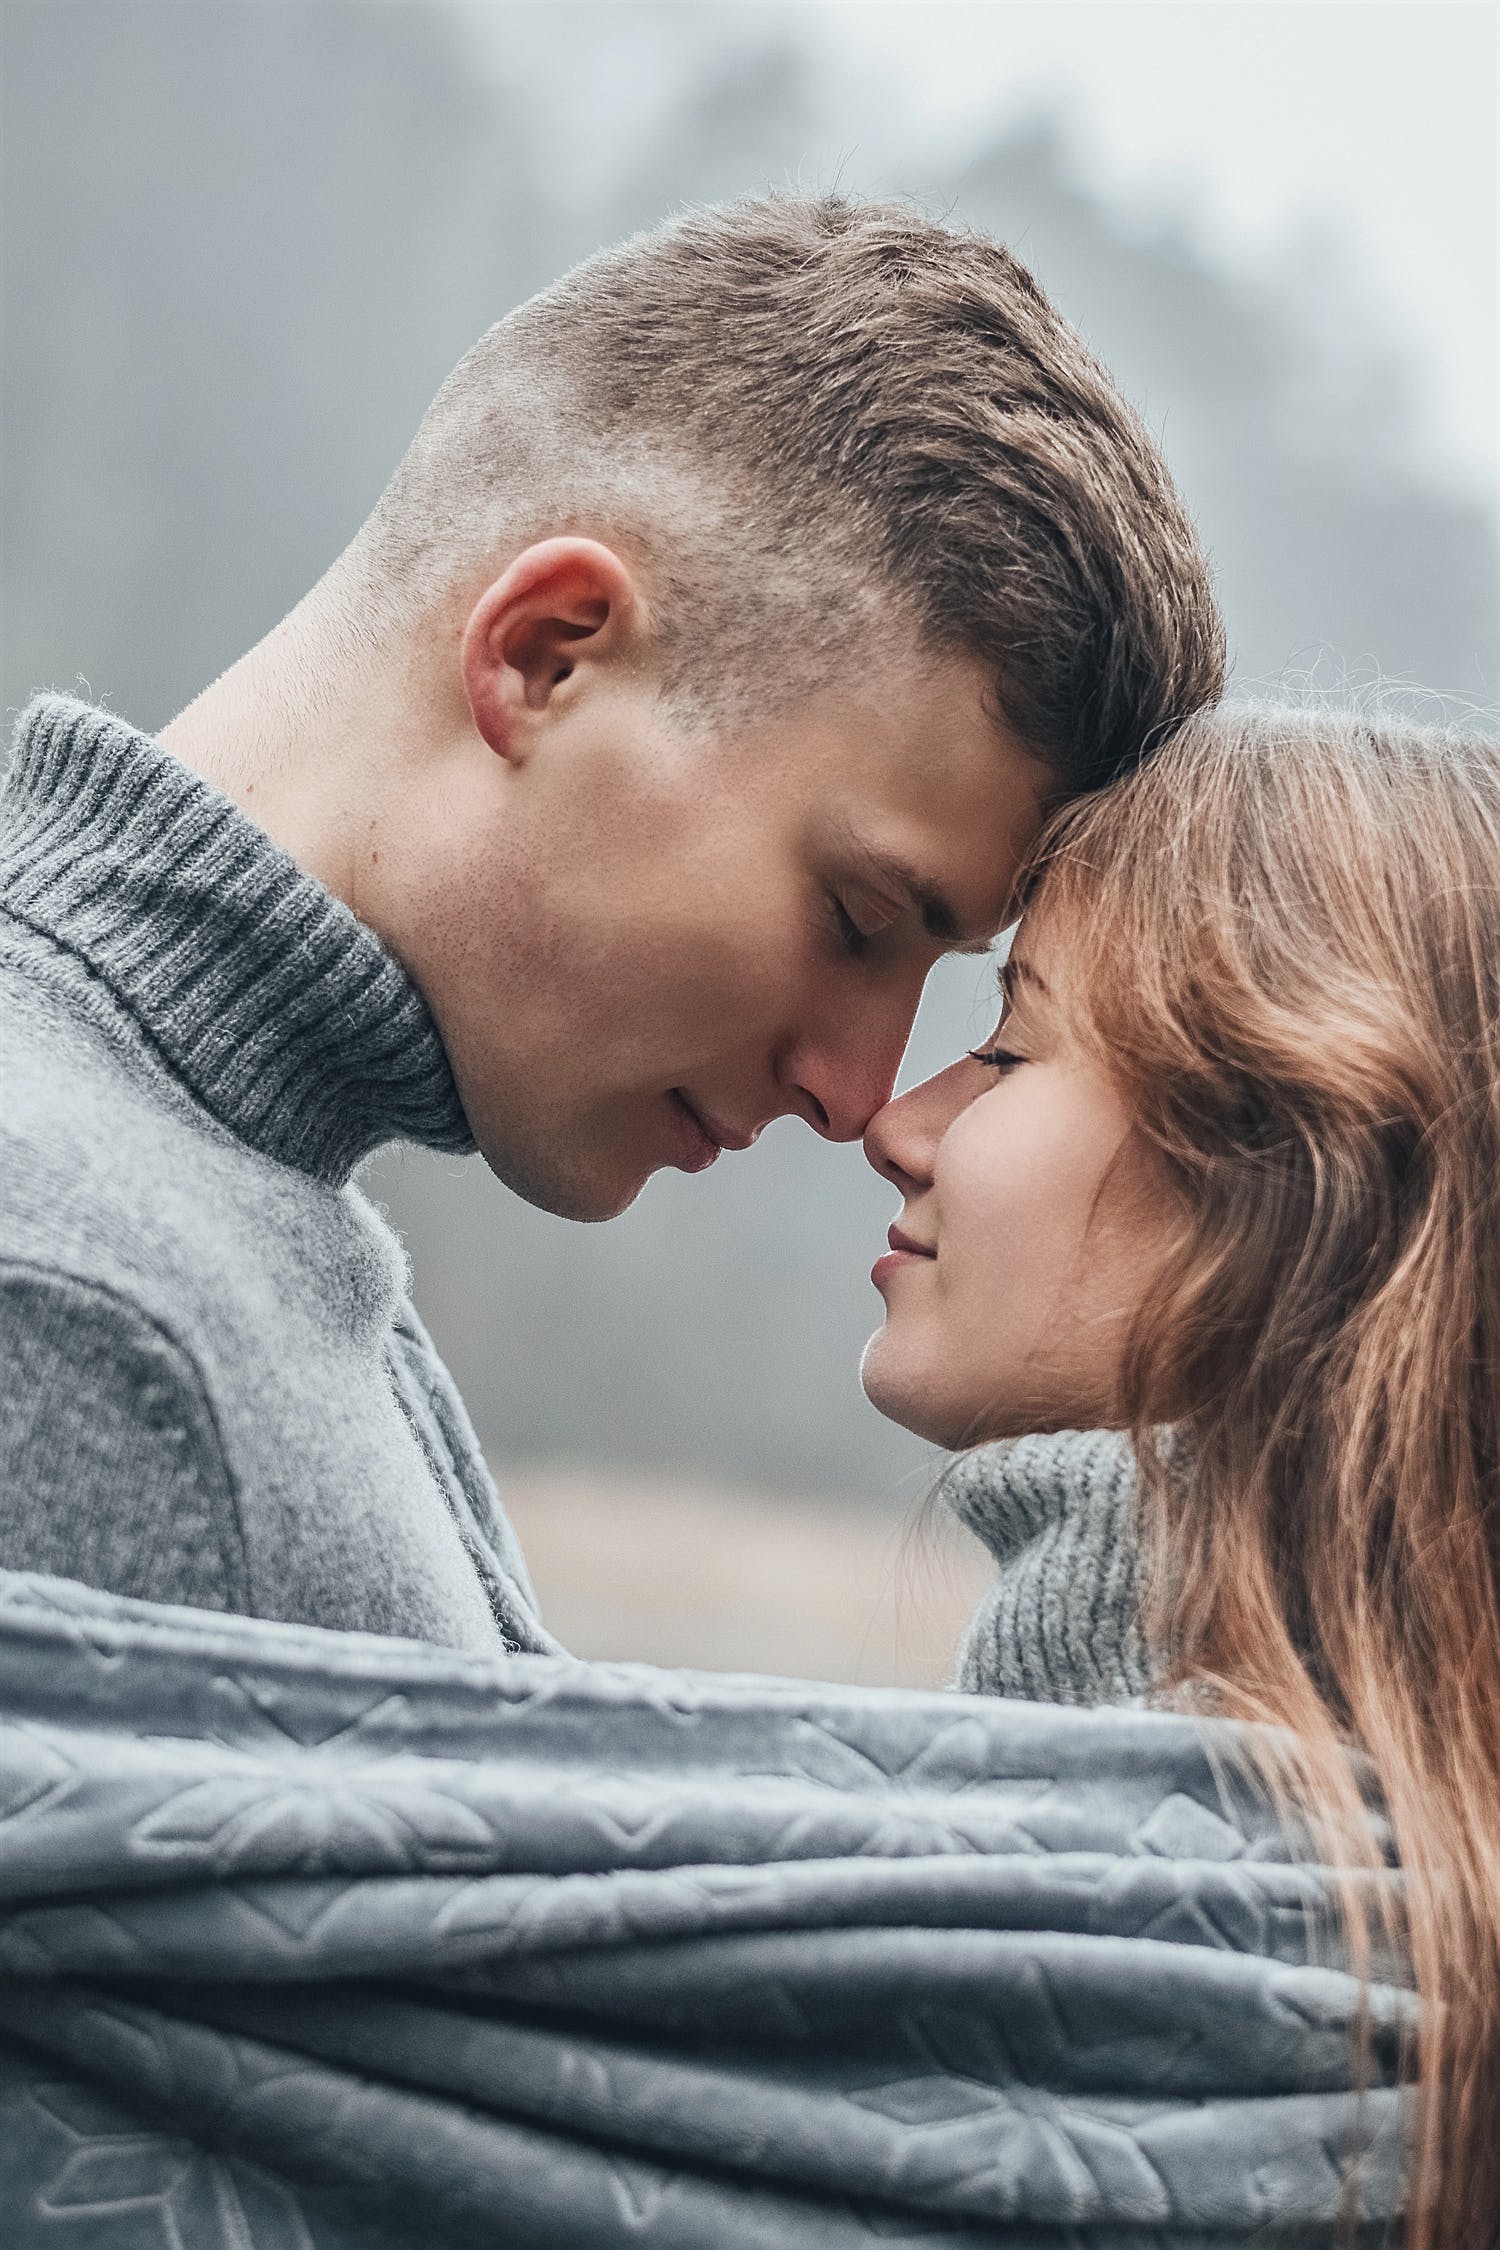 10 секретов обольщения от психолога: как флиртовать с мужчиной правильно